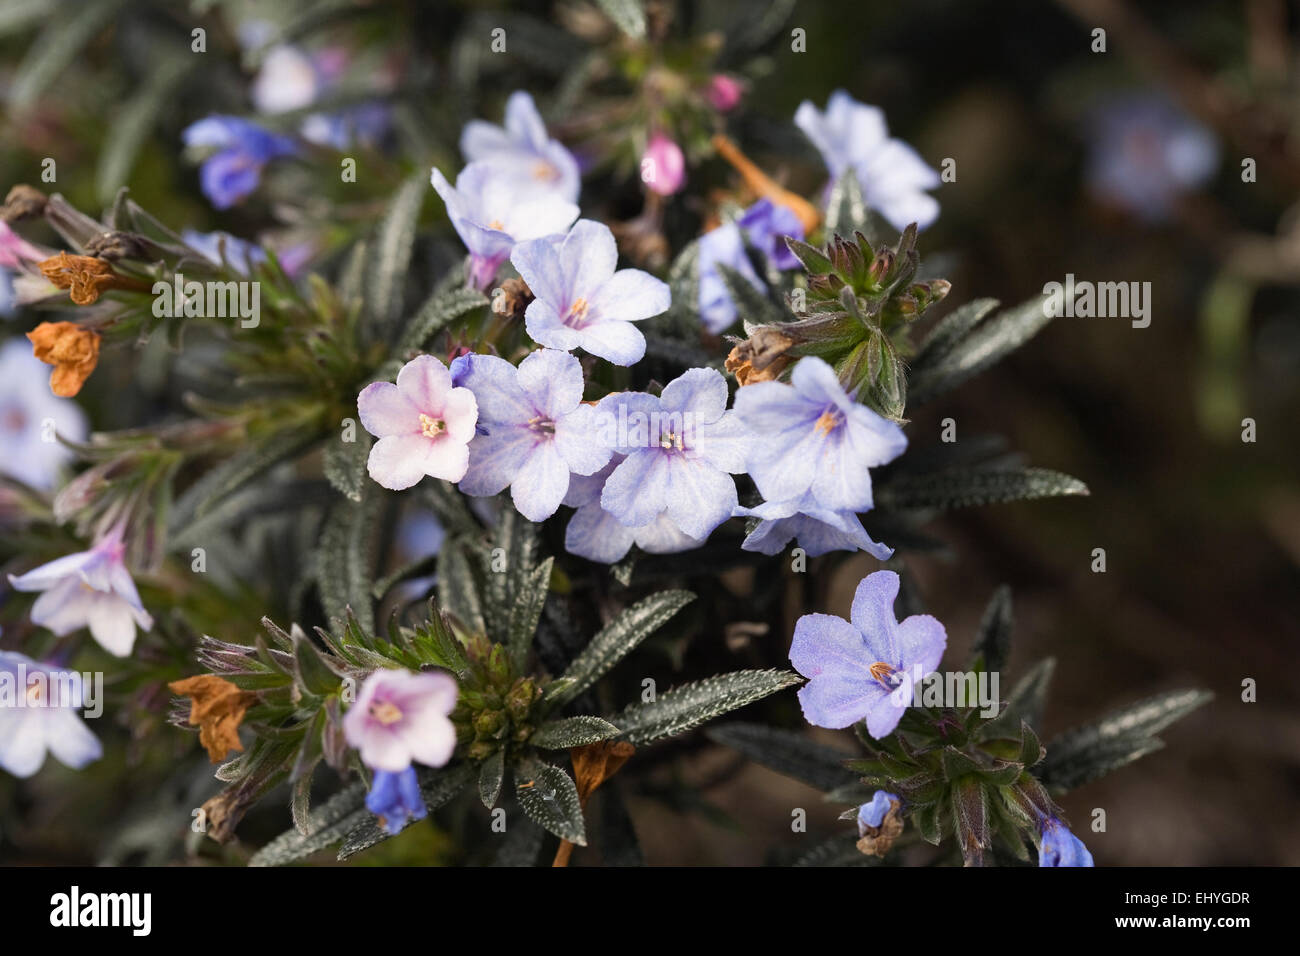 Lithodora zahnii flowers. Stock Photo